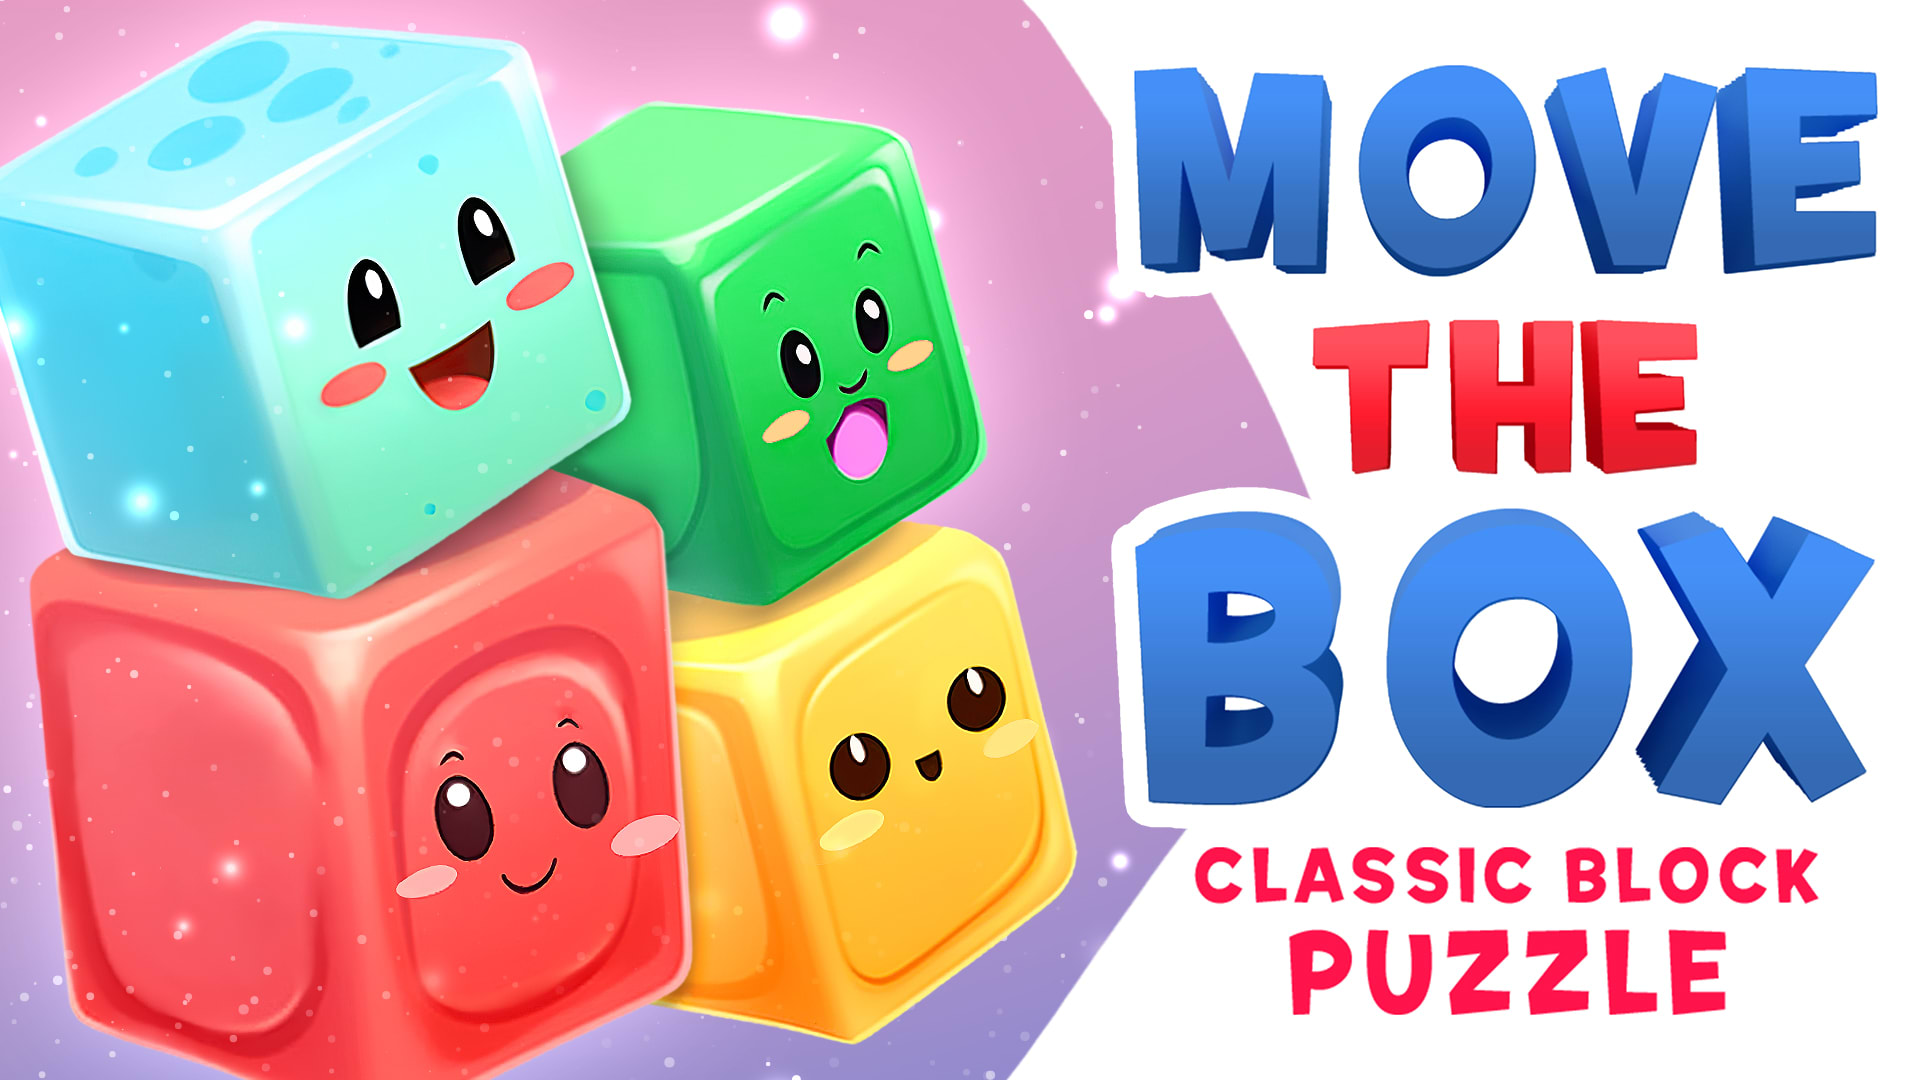 Move The Box: Classic Block Puzzle